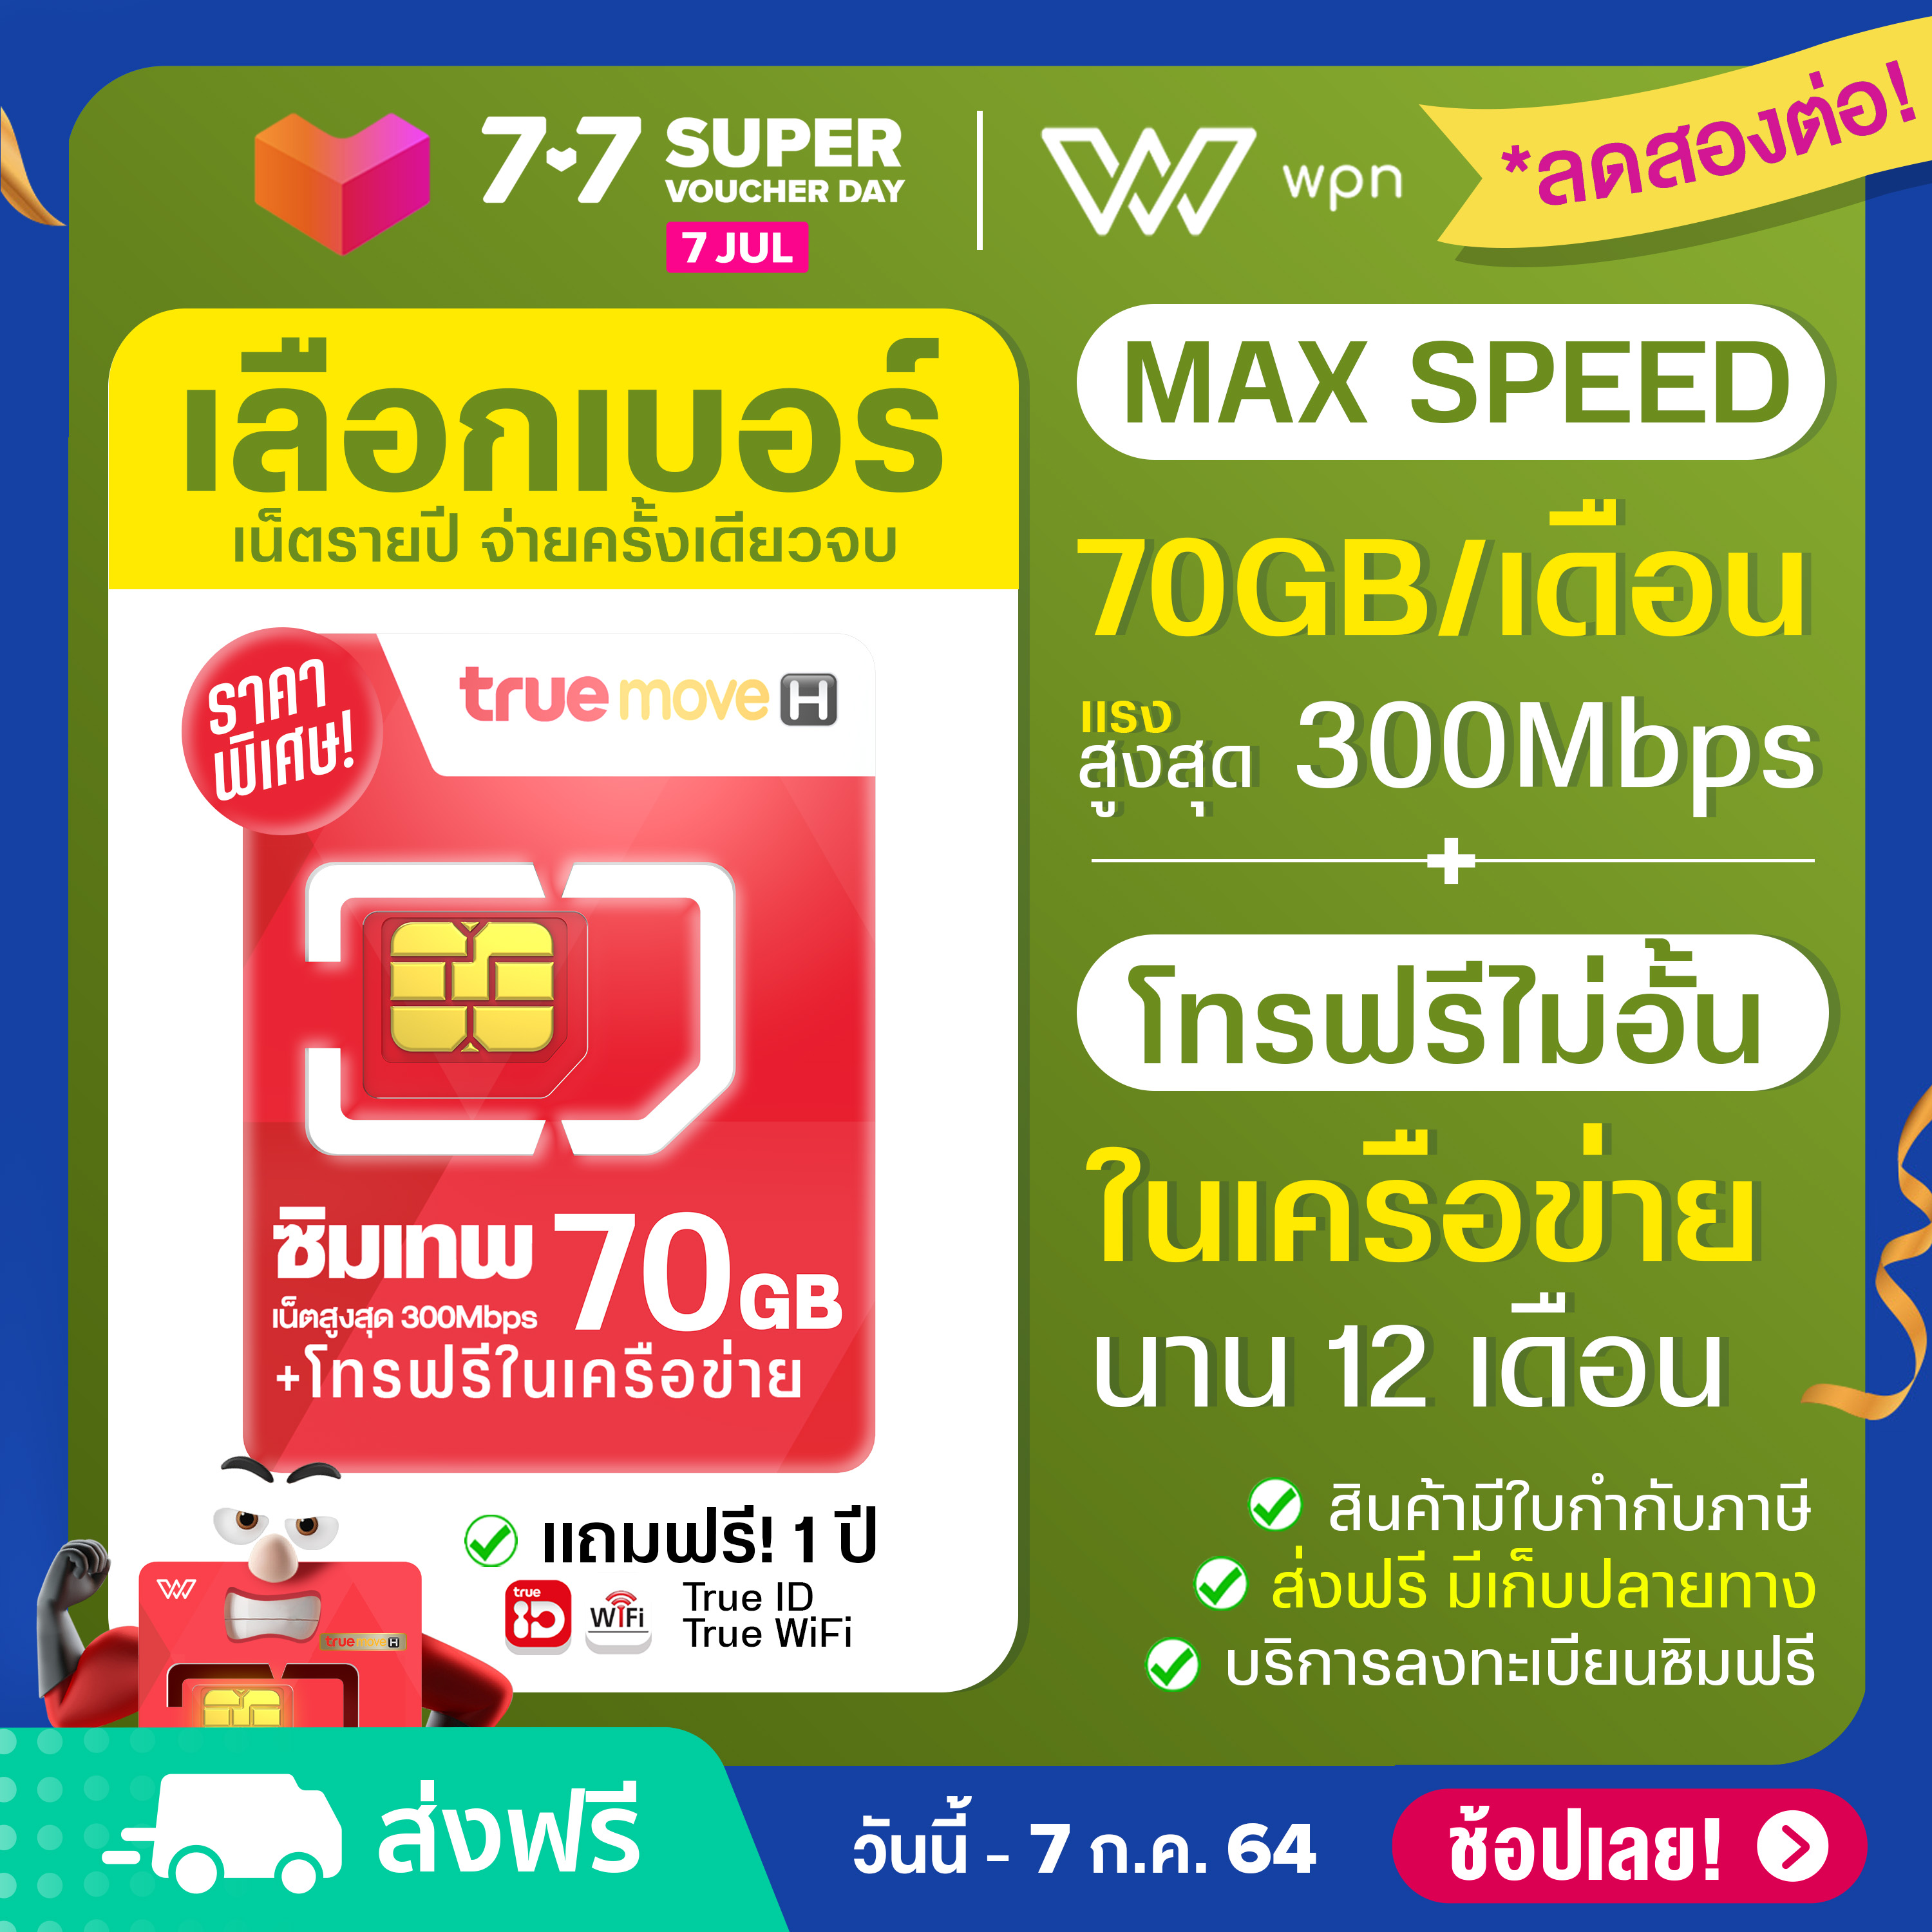 [ ตัวแทนศูนย์บริการ ] เลือกเบอร์ได้ (ชุด1) ซิมเทพ FAST 70 Internet Max Speed 70GB / เดือน + โทรฟรีในเครือข่าย นาน 1 ปี Sim true ส่งฟรี ออกใบกำกับได้ by wpnmobile